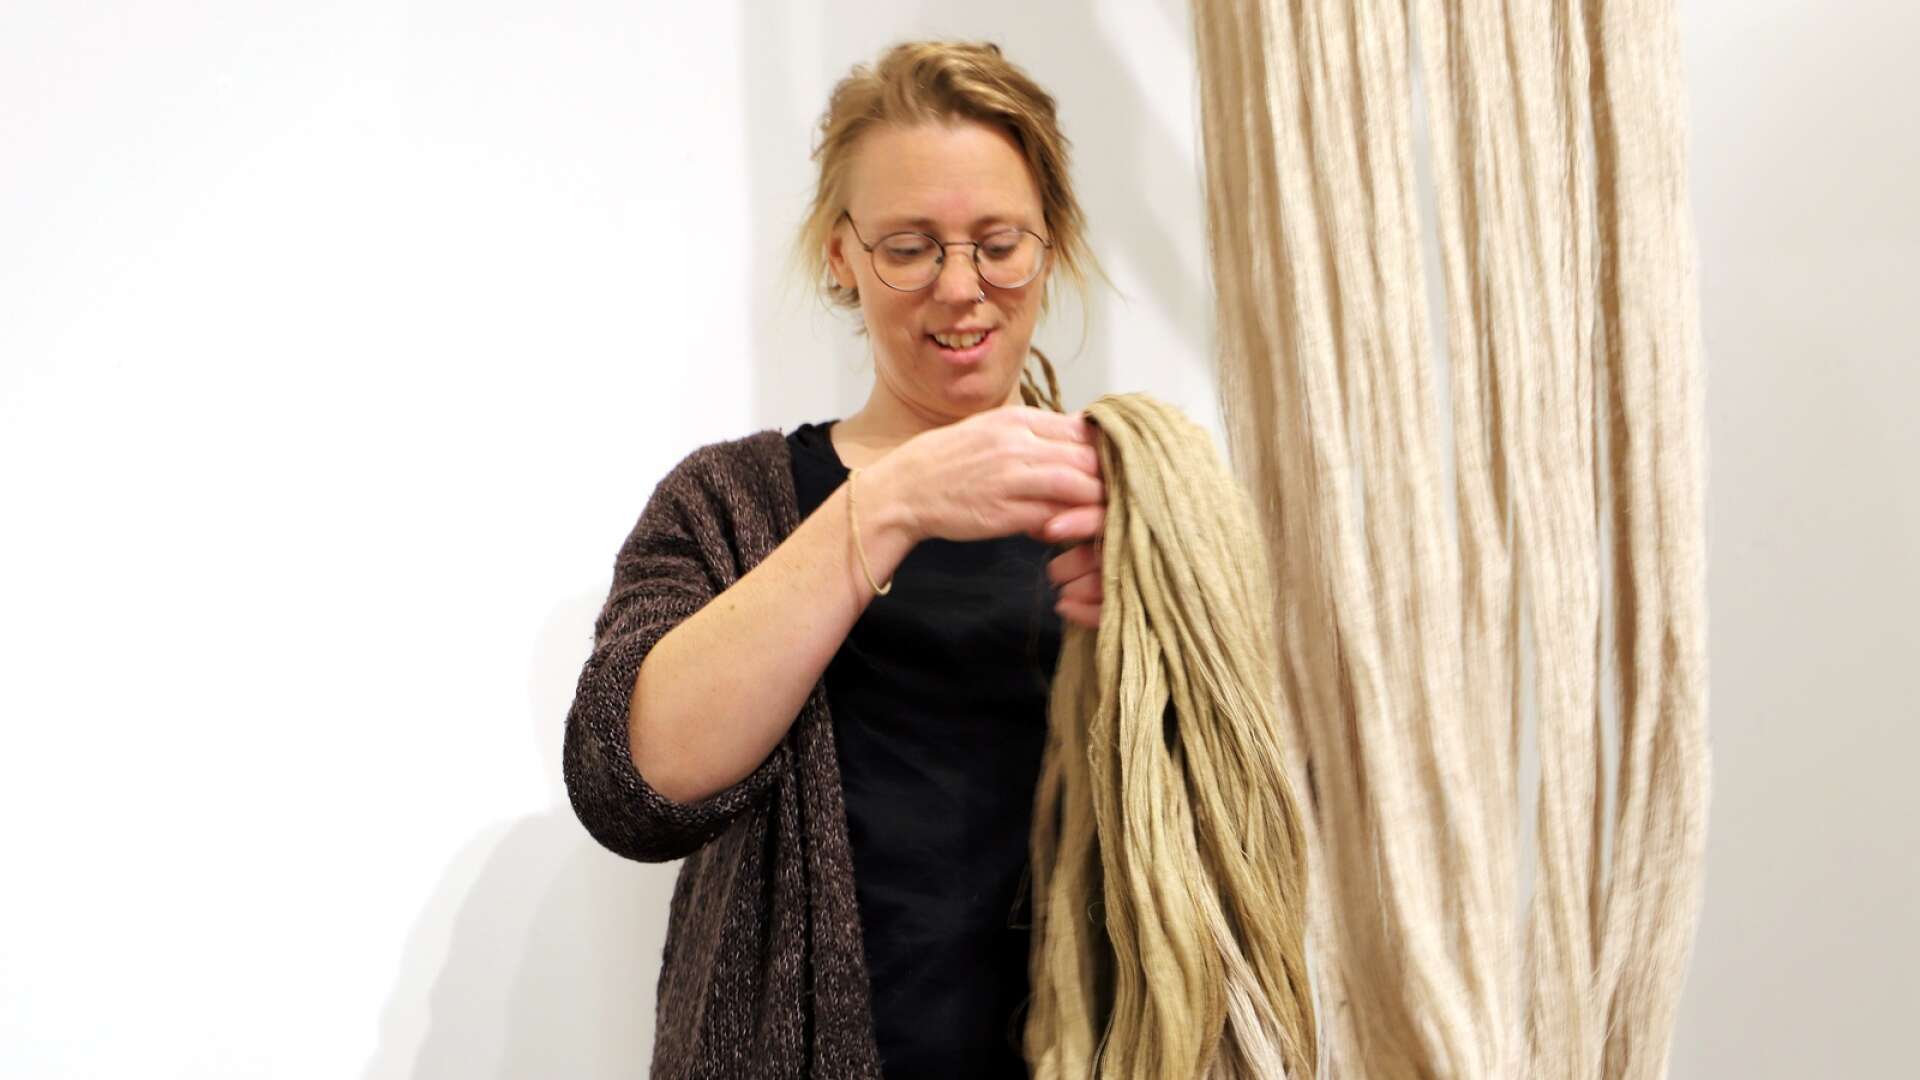 Textilkonstnären Maria Andersson från Årjäng är klar för Vårsalongen på Liljevalchs. Bilden är från en tidigare utställning på Carlstad art gallery, dit hon återkommer i mars.